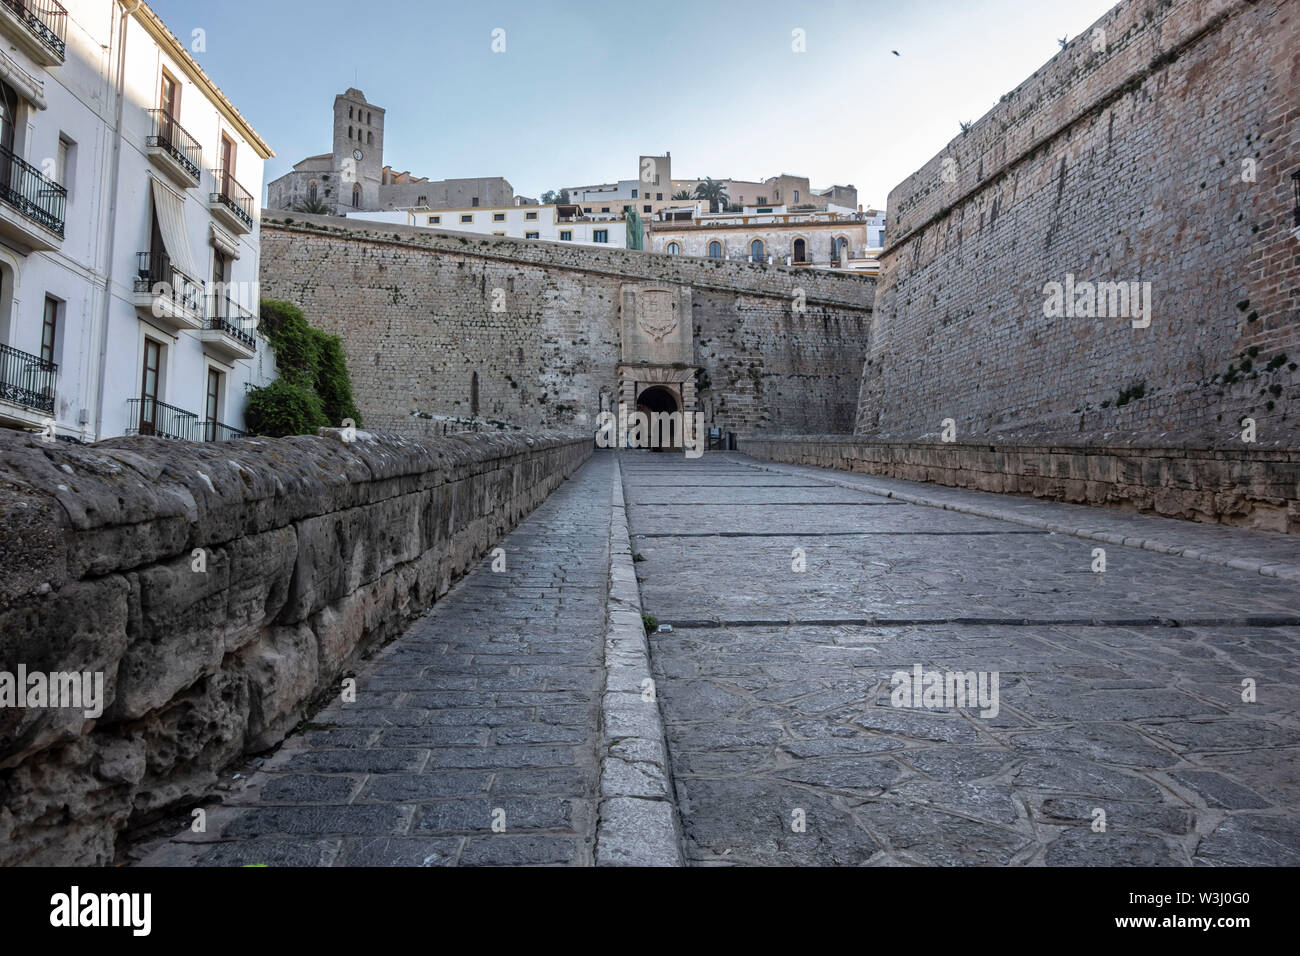 Tour d'entrée principale, Portal de Ses Taules, l'enceinte fortifiée de Dalt Vila d'Ibiza, Majorque, Baléares. L'Espagne. Banque D'Images